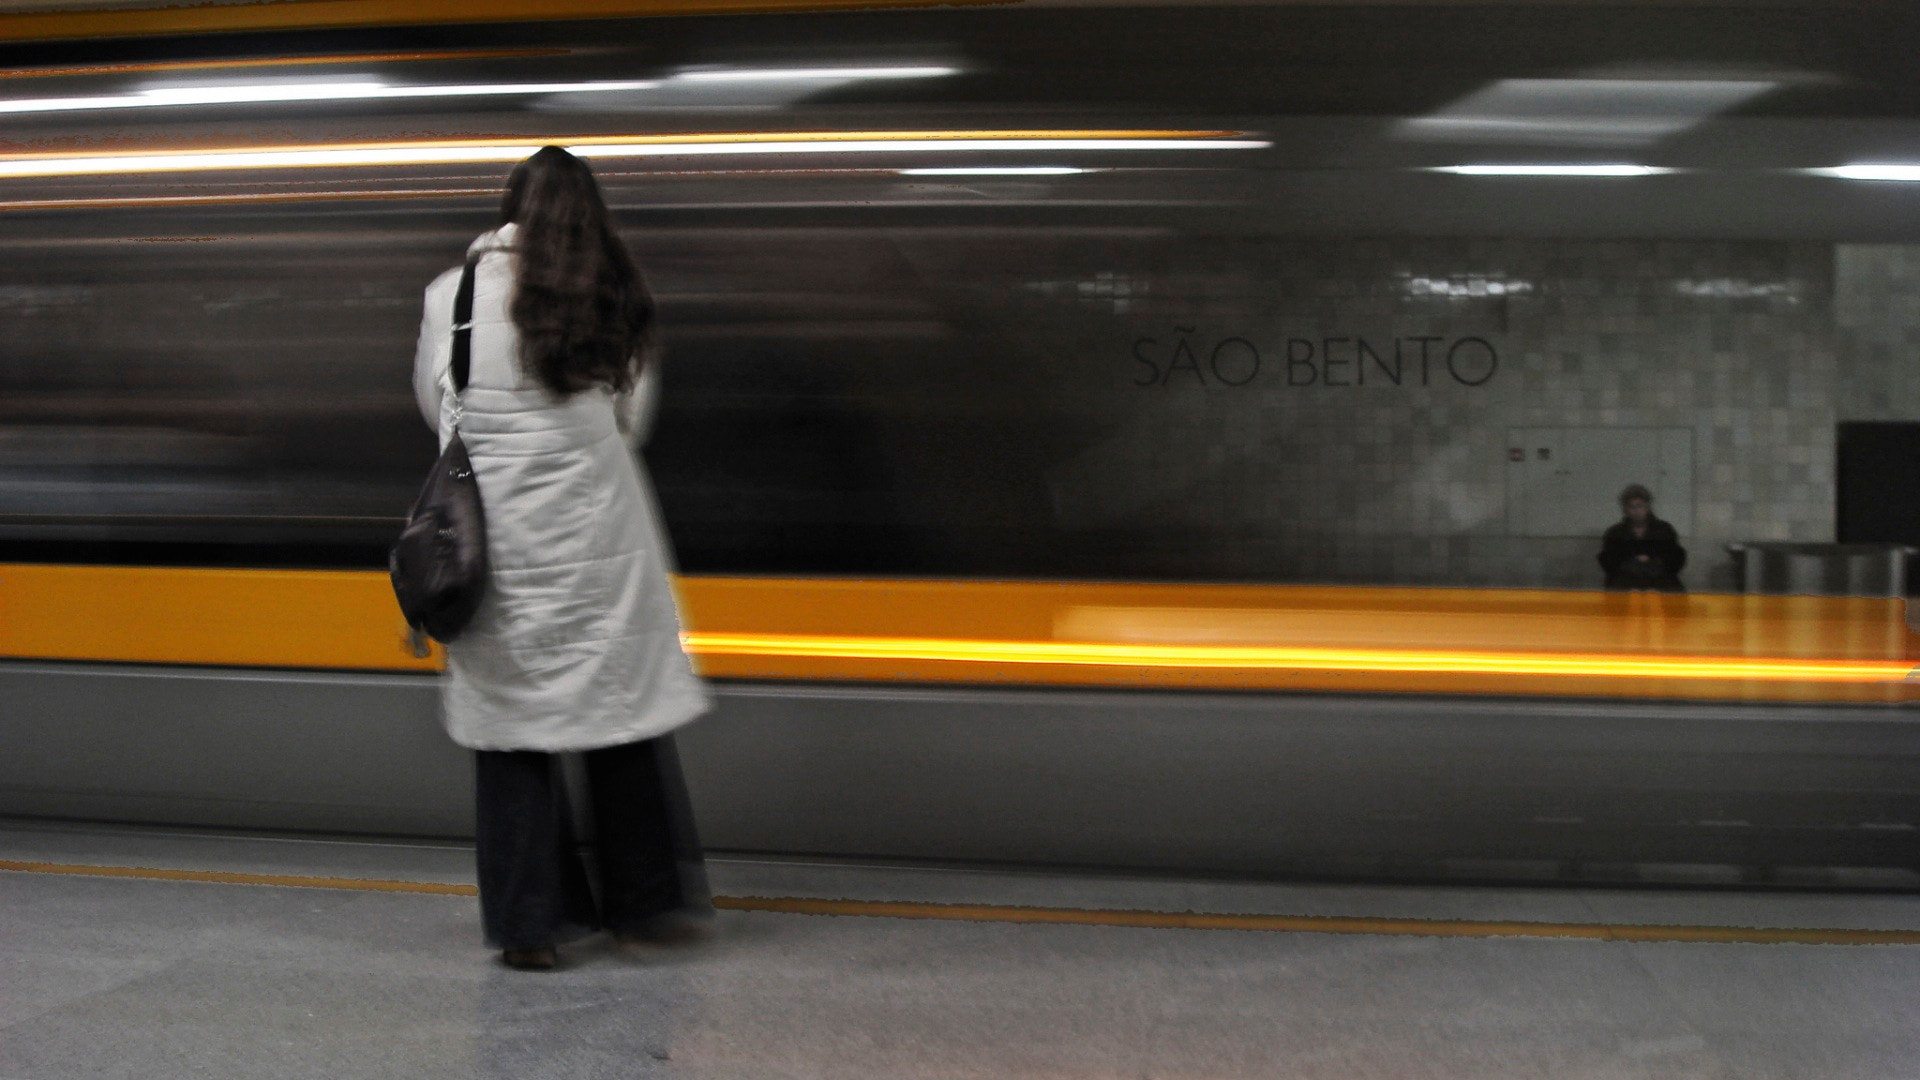 Sony DSC-T10 sample photo. Oporto's subway photography